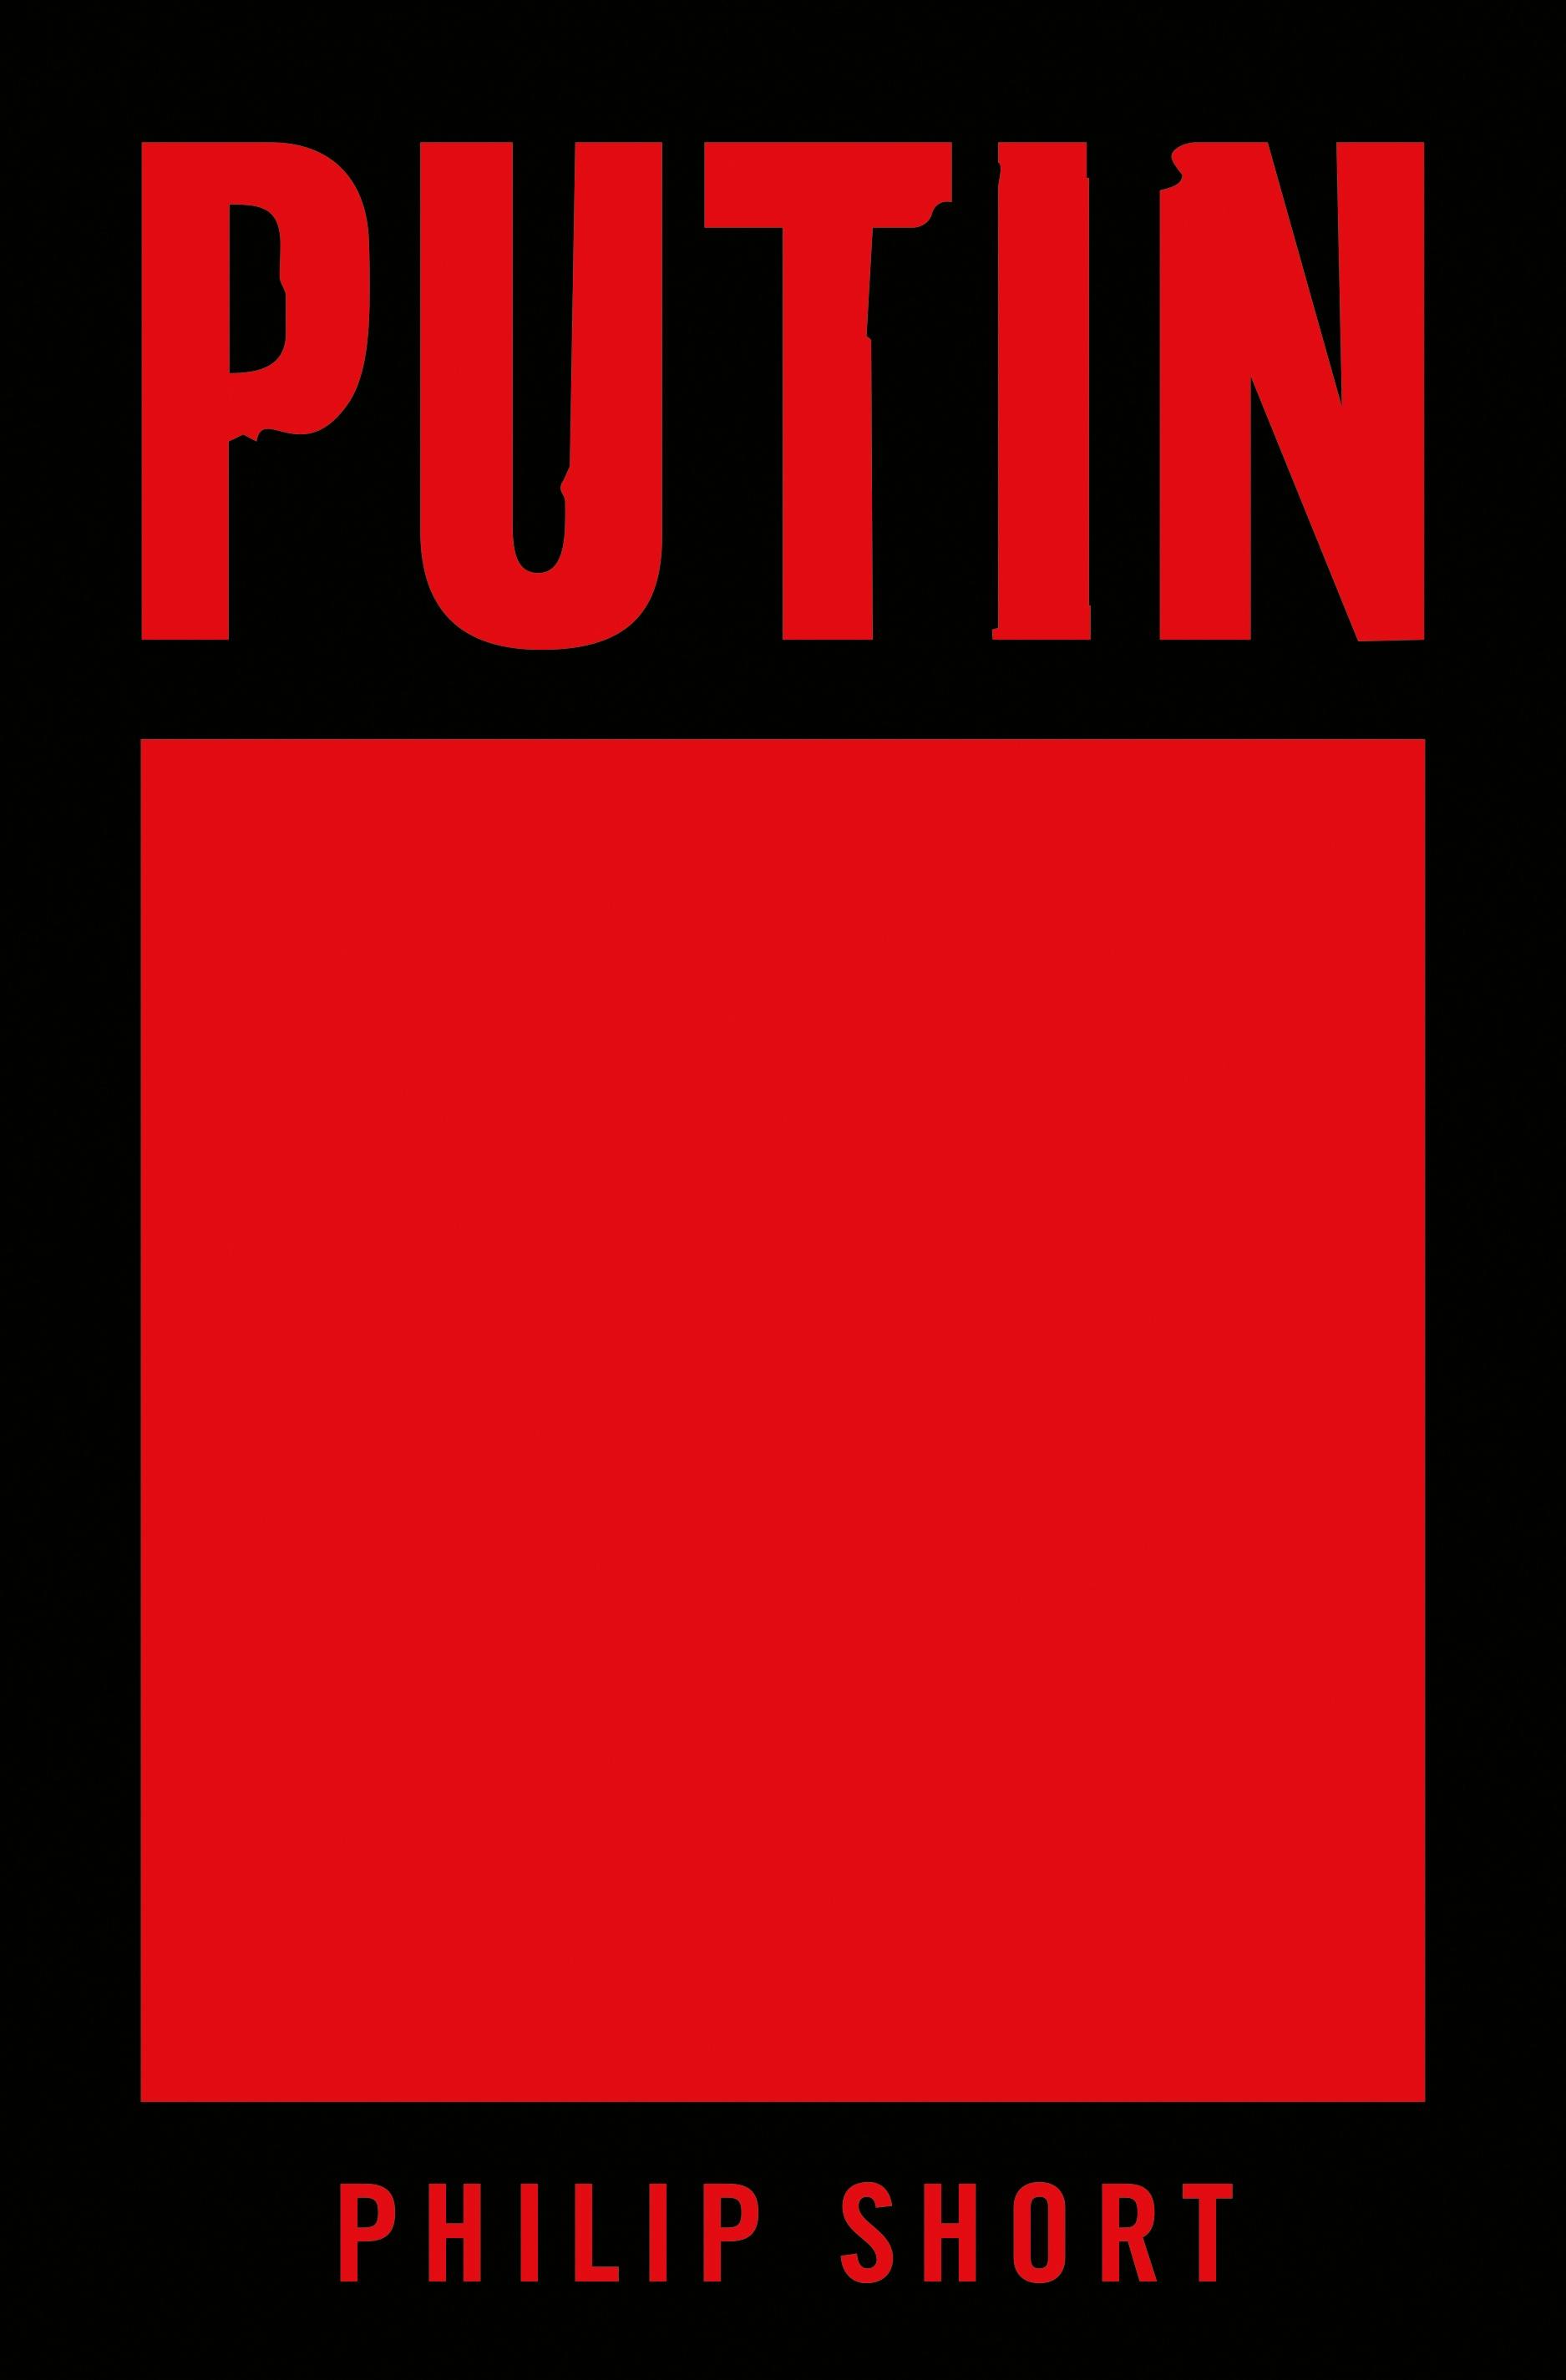 Putin Philip Short